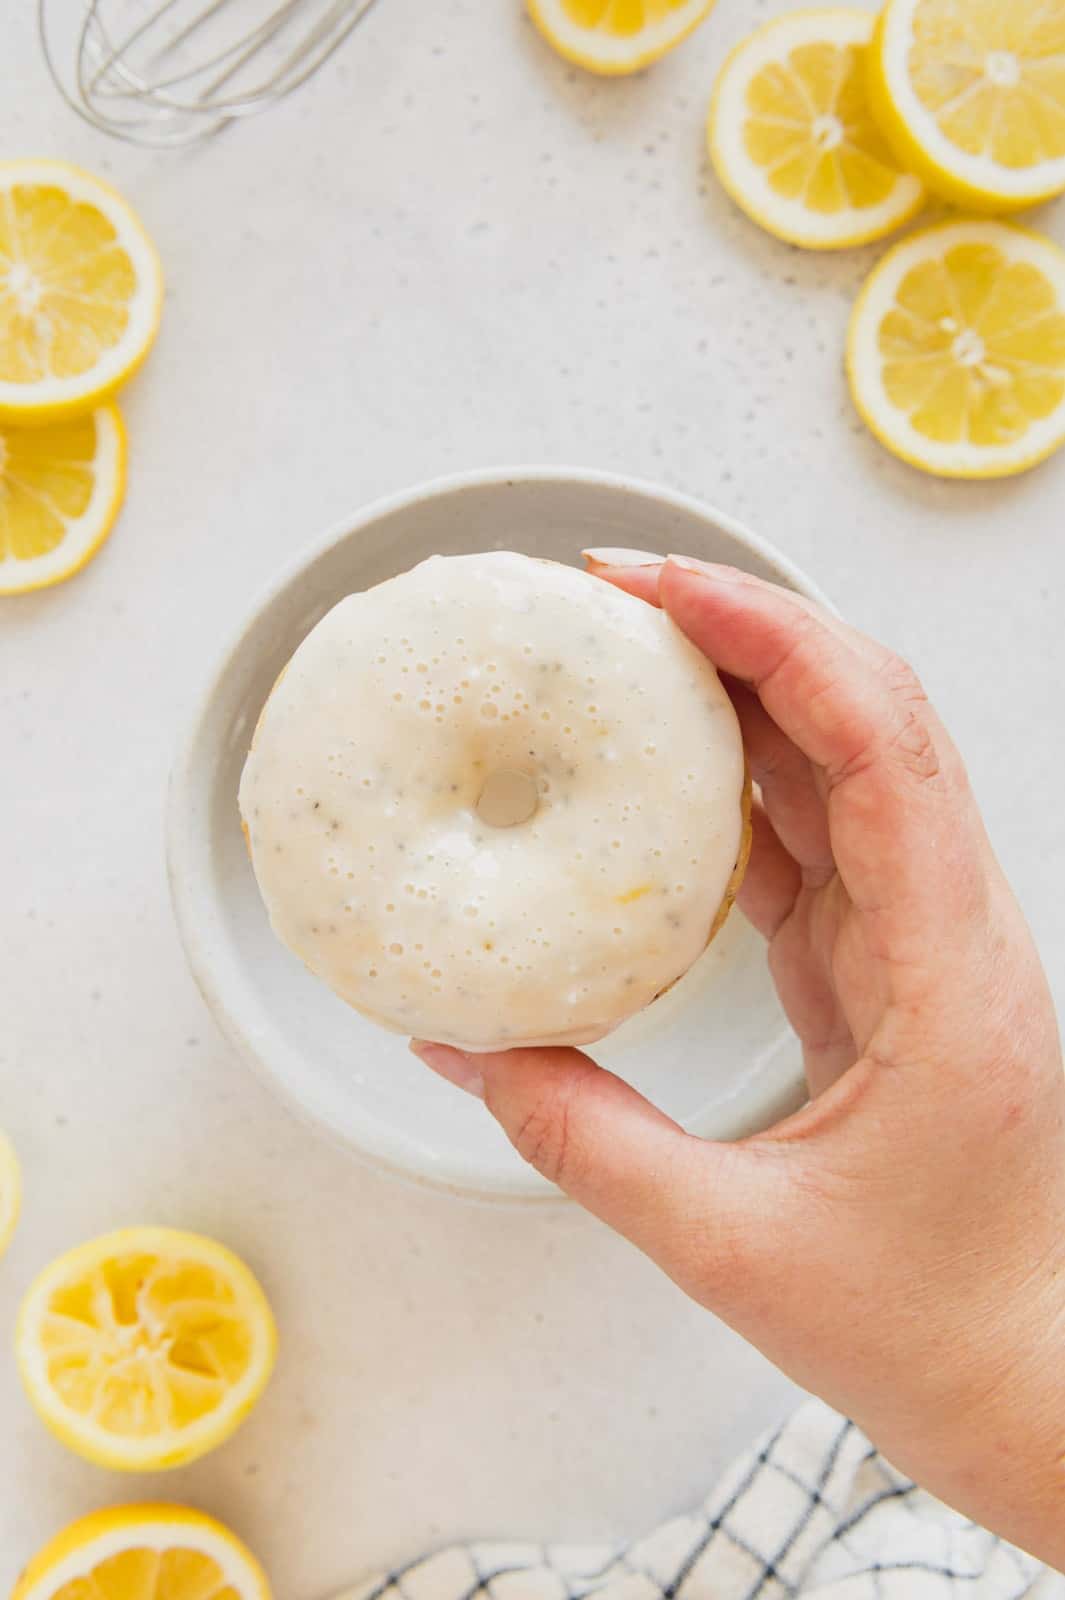 Lemon donut dipped in a homemade glaze.